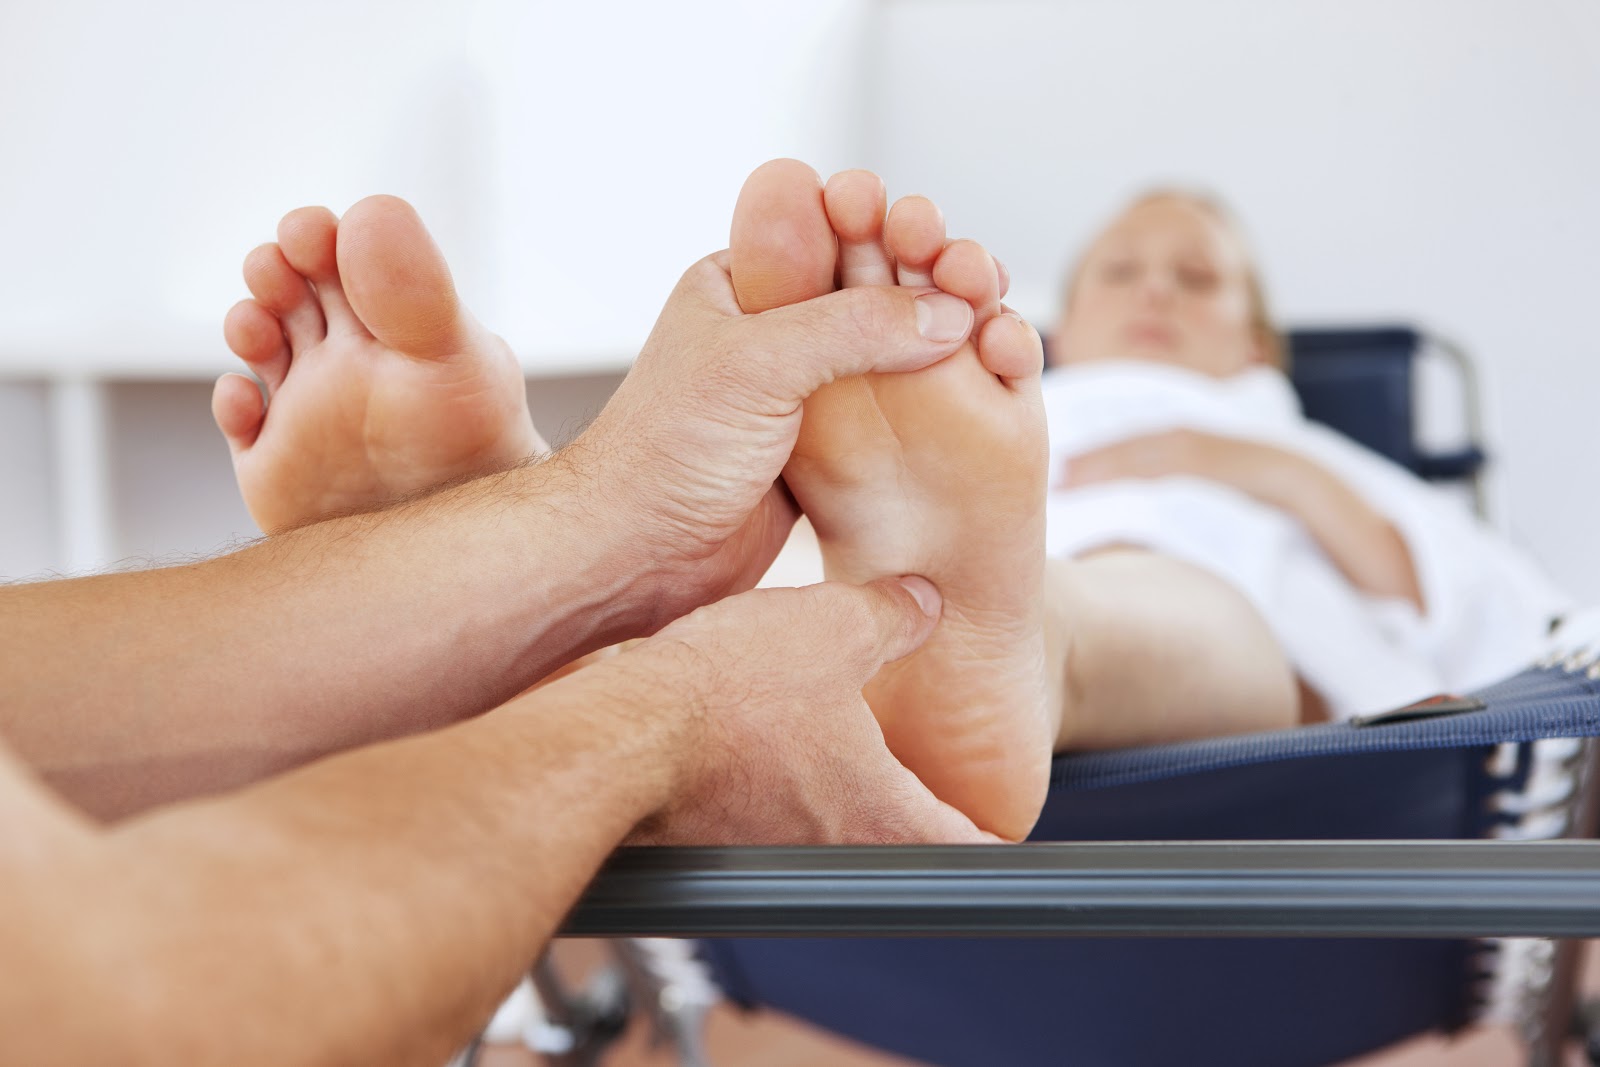 Nếu công việc bắt buộc mẹ phải đứng nhiều thì mẹ nên thường xuyên massage chân để giúp máu lưu thông tốt hơn